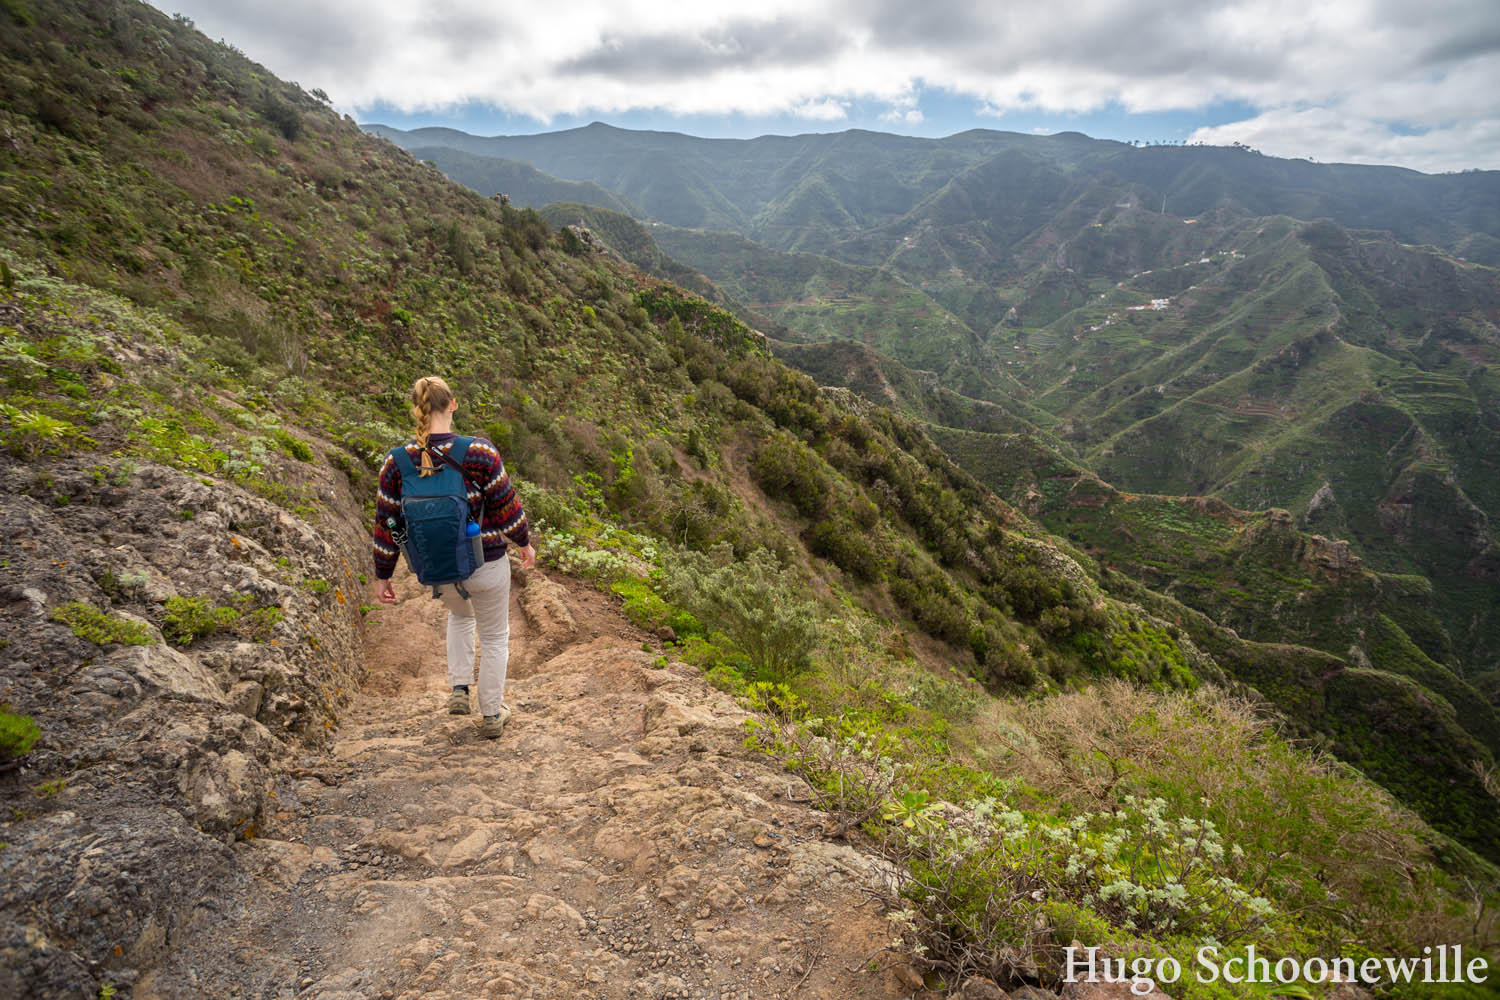 Wandelend door natuurpark Anaga op Tenerife met veel groen en uitzichten